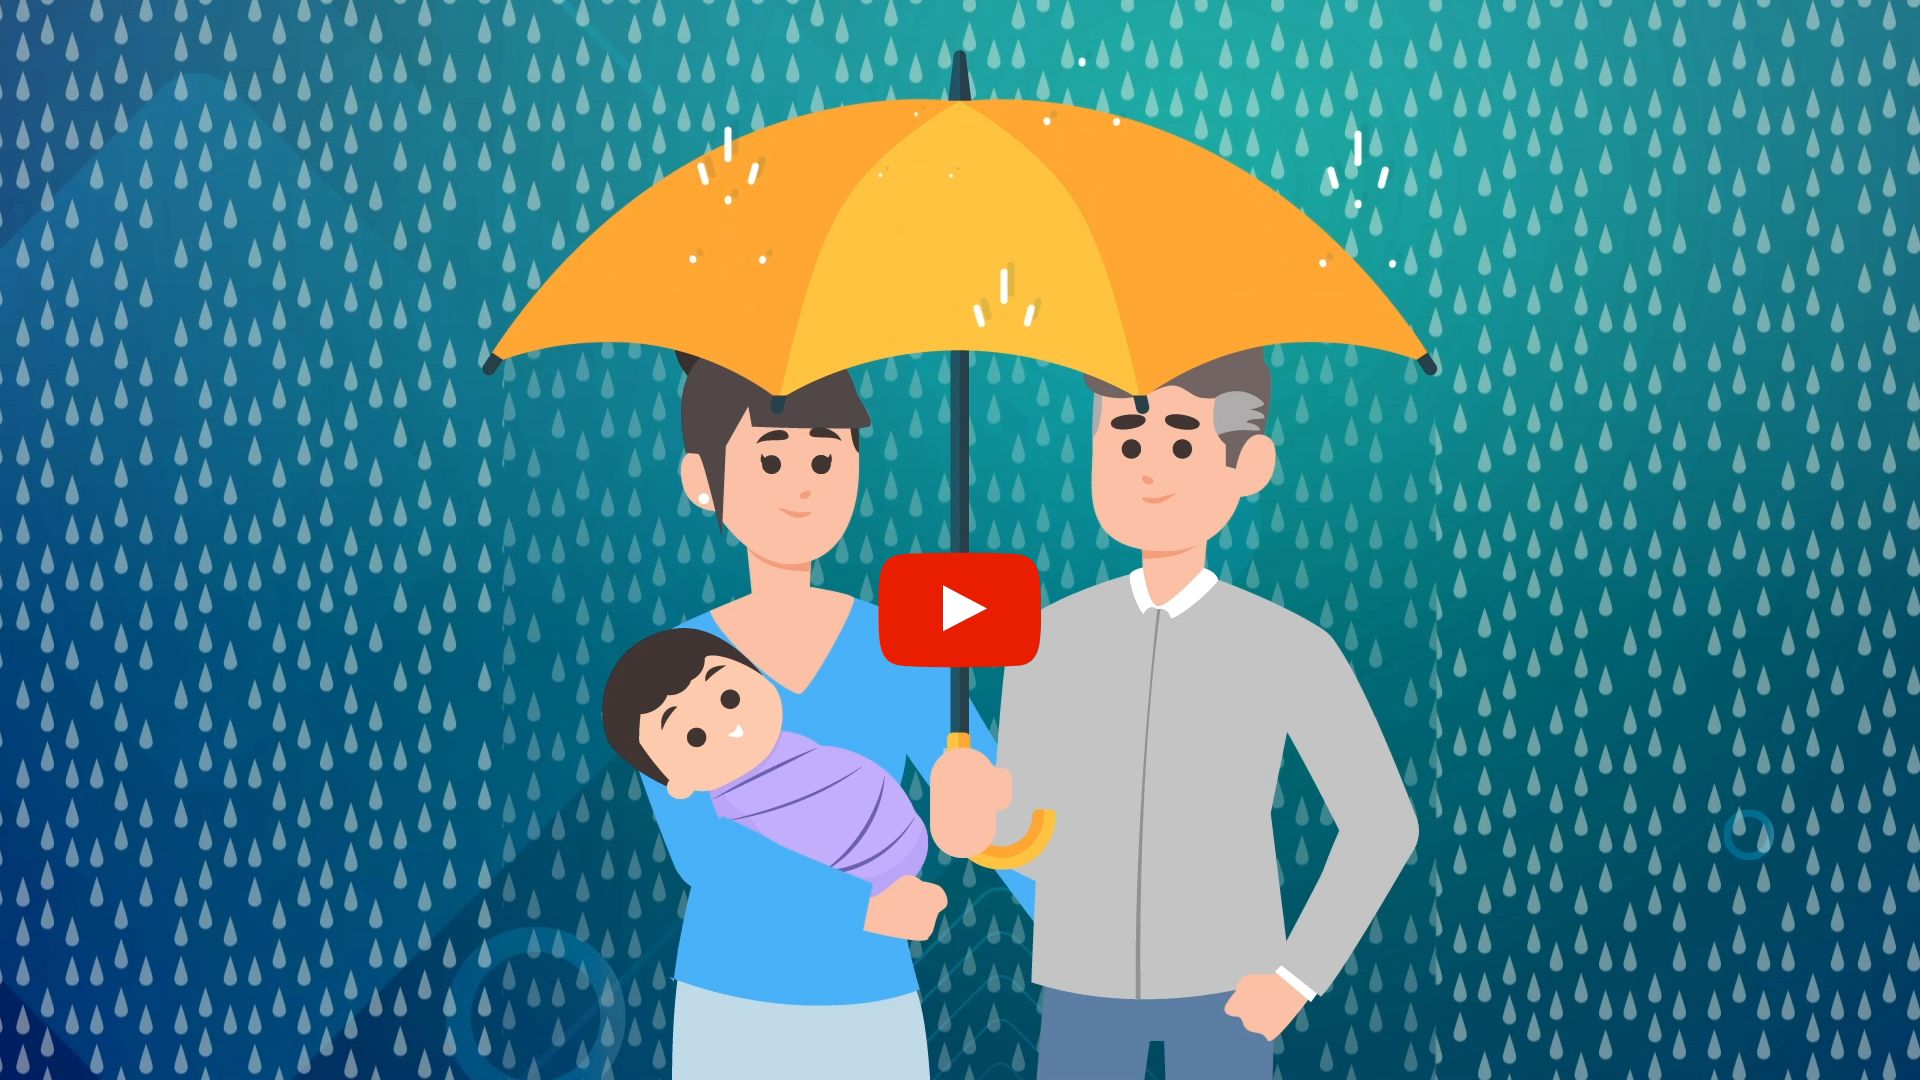 animação mostra uma mulher segurando um bebê, ao lado de um homem, que segura um guarda-chuva, num cenário ao fundo de muita chuva.